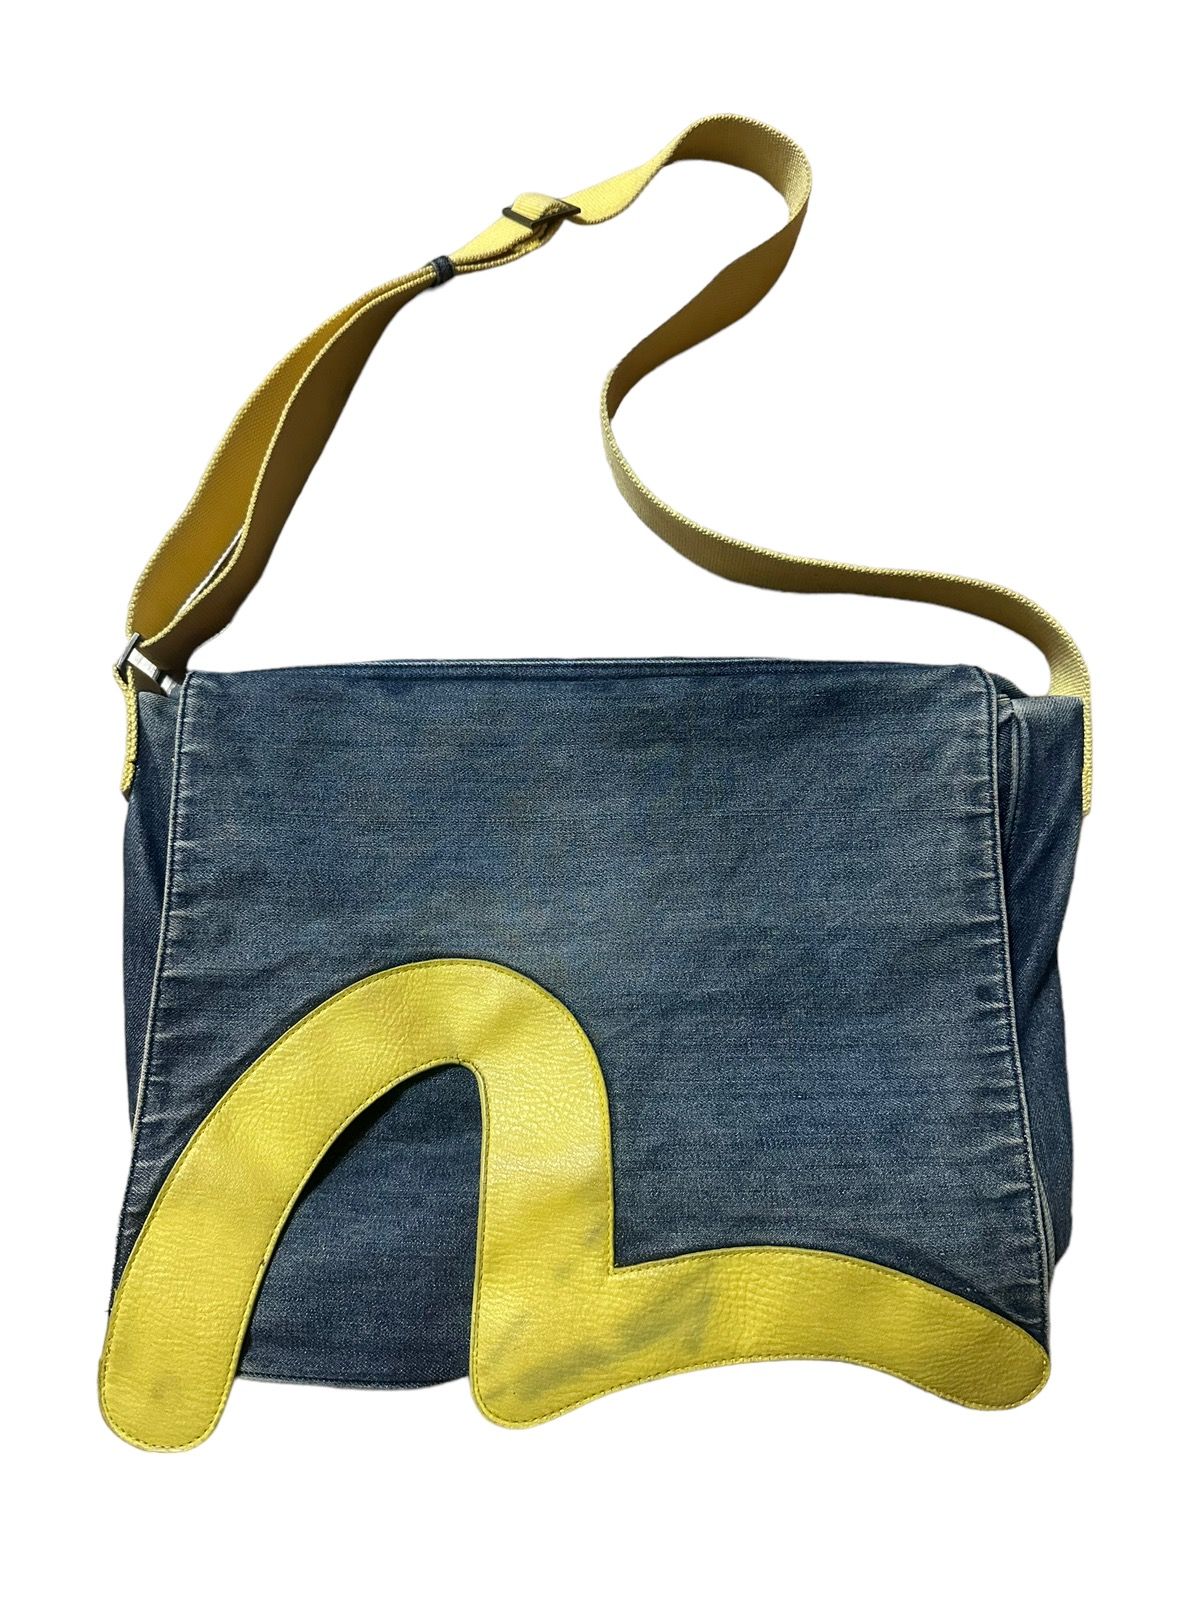 Pre-owned Archival Clothing X Distressed Denim Evisu Yamane Denim Messenger Shoulder Bag In Blue